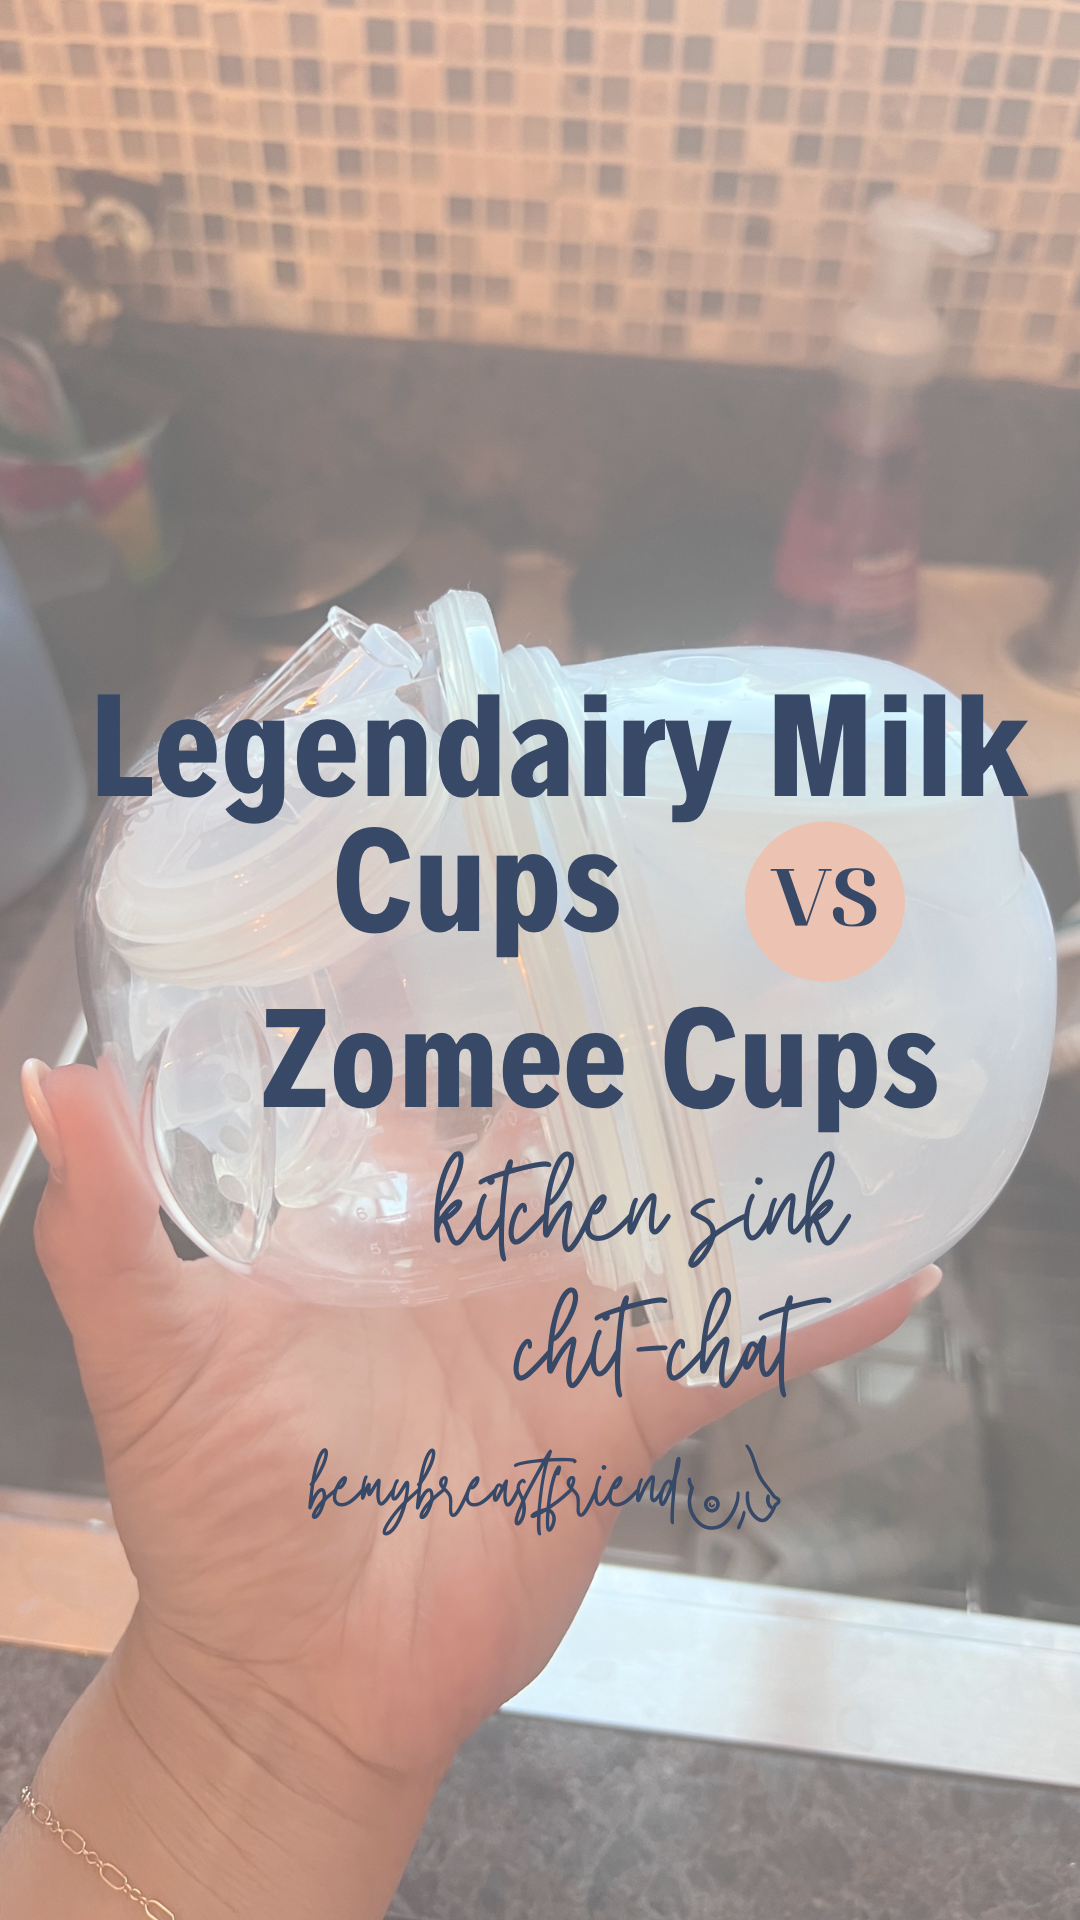 Legendairy Milk Cups vs Zomee Cups